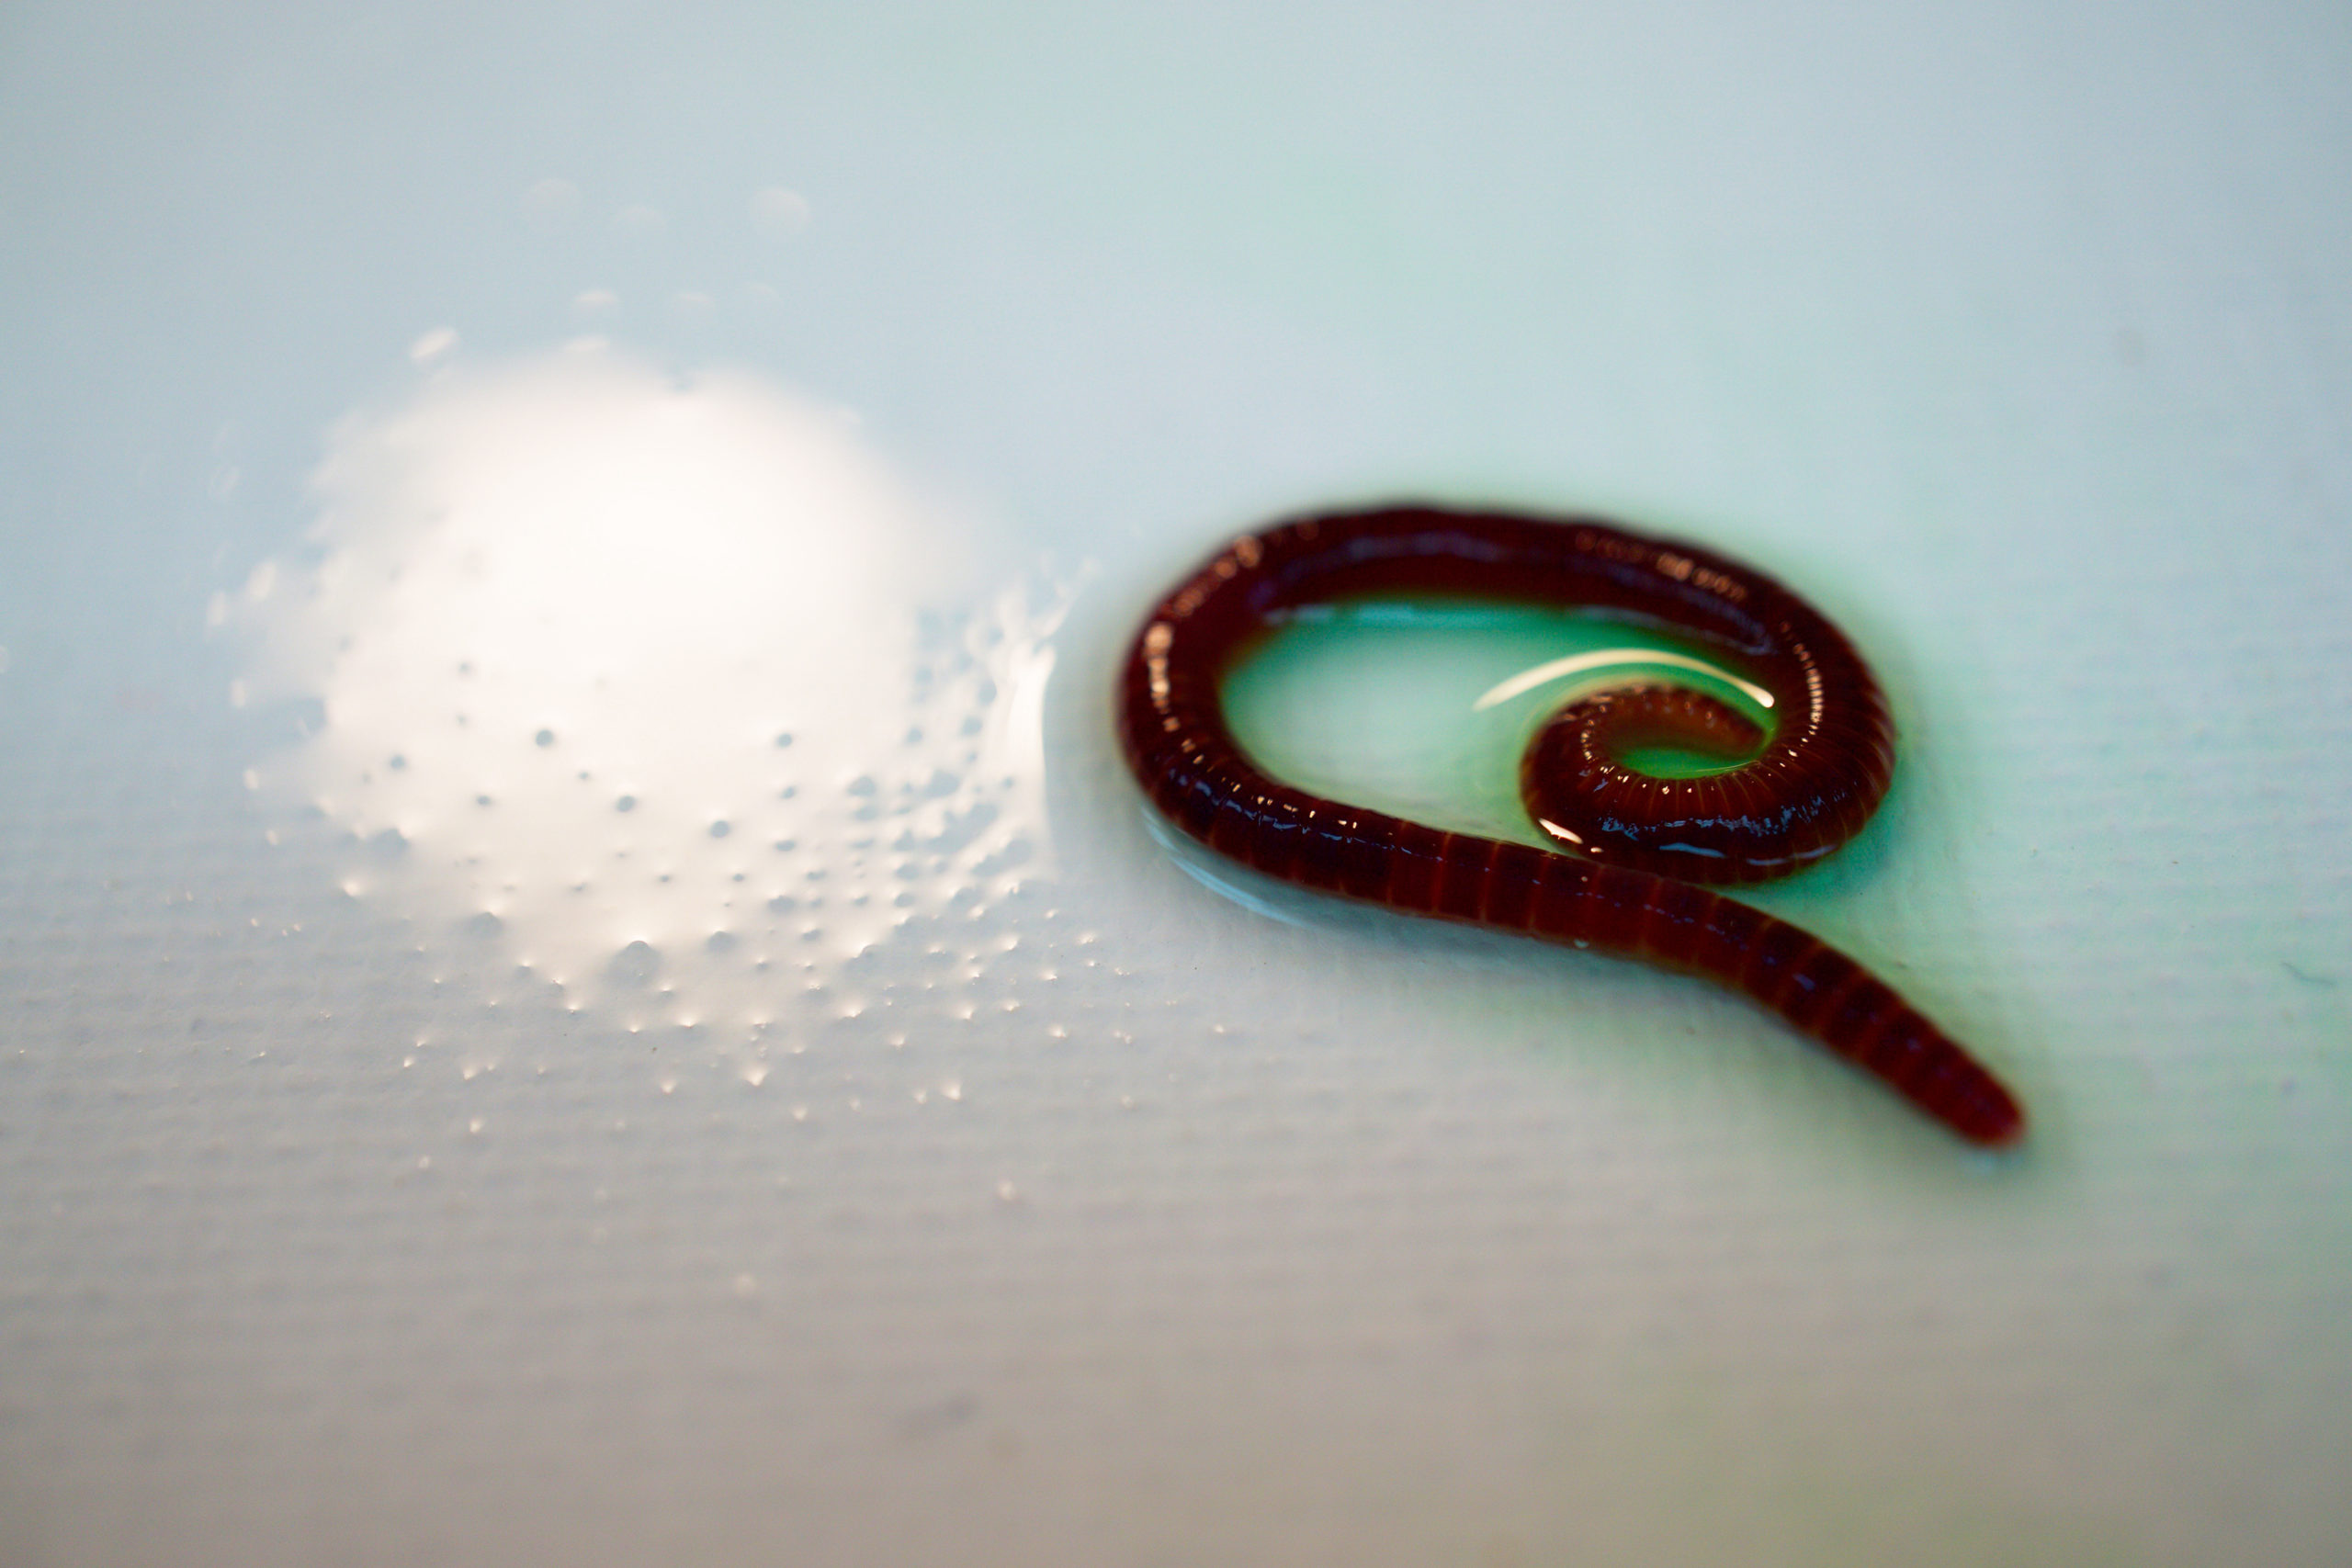 An earthworm from one of Lauren Ruiz's art installations.